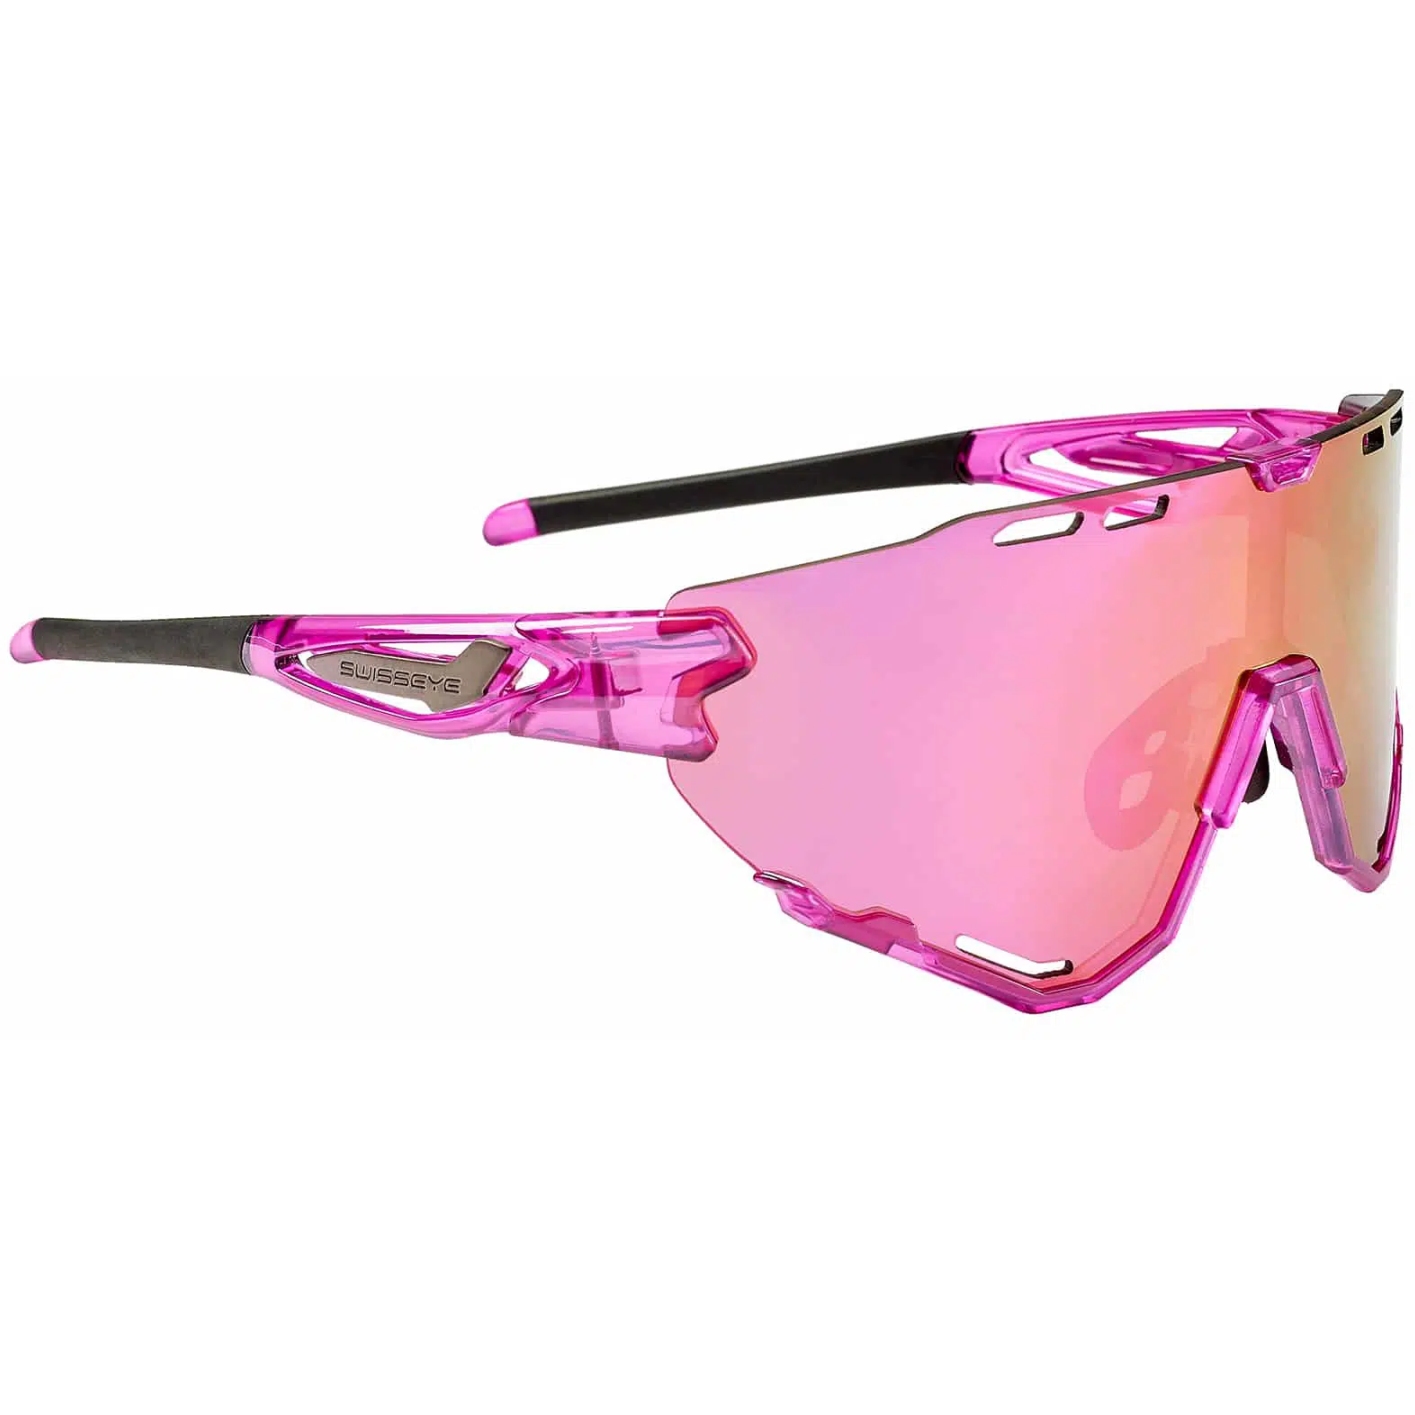 Produktbild von Swiss Eye Mantra Brille 13024 - Shiny Laser Pink - Smoke Pink Revo